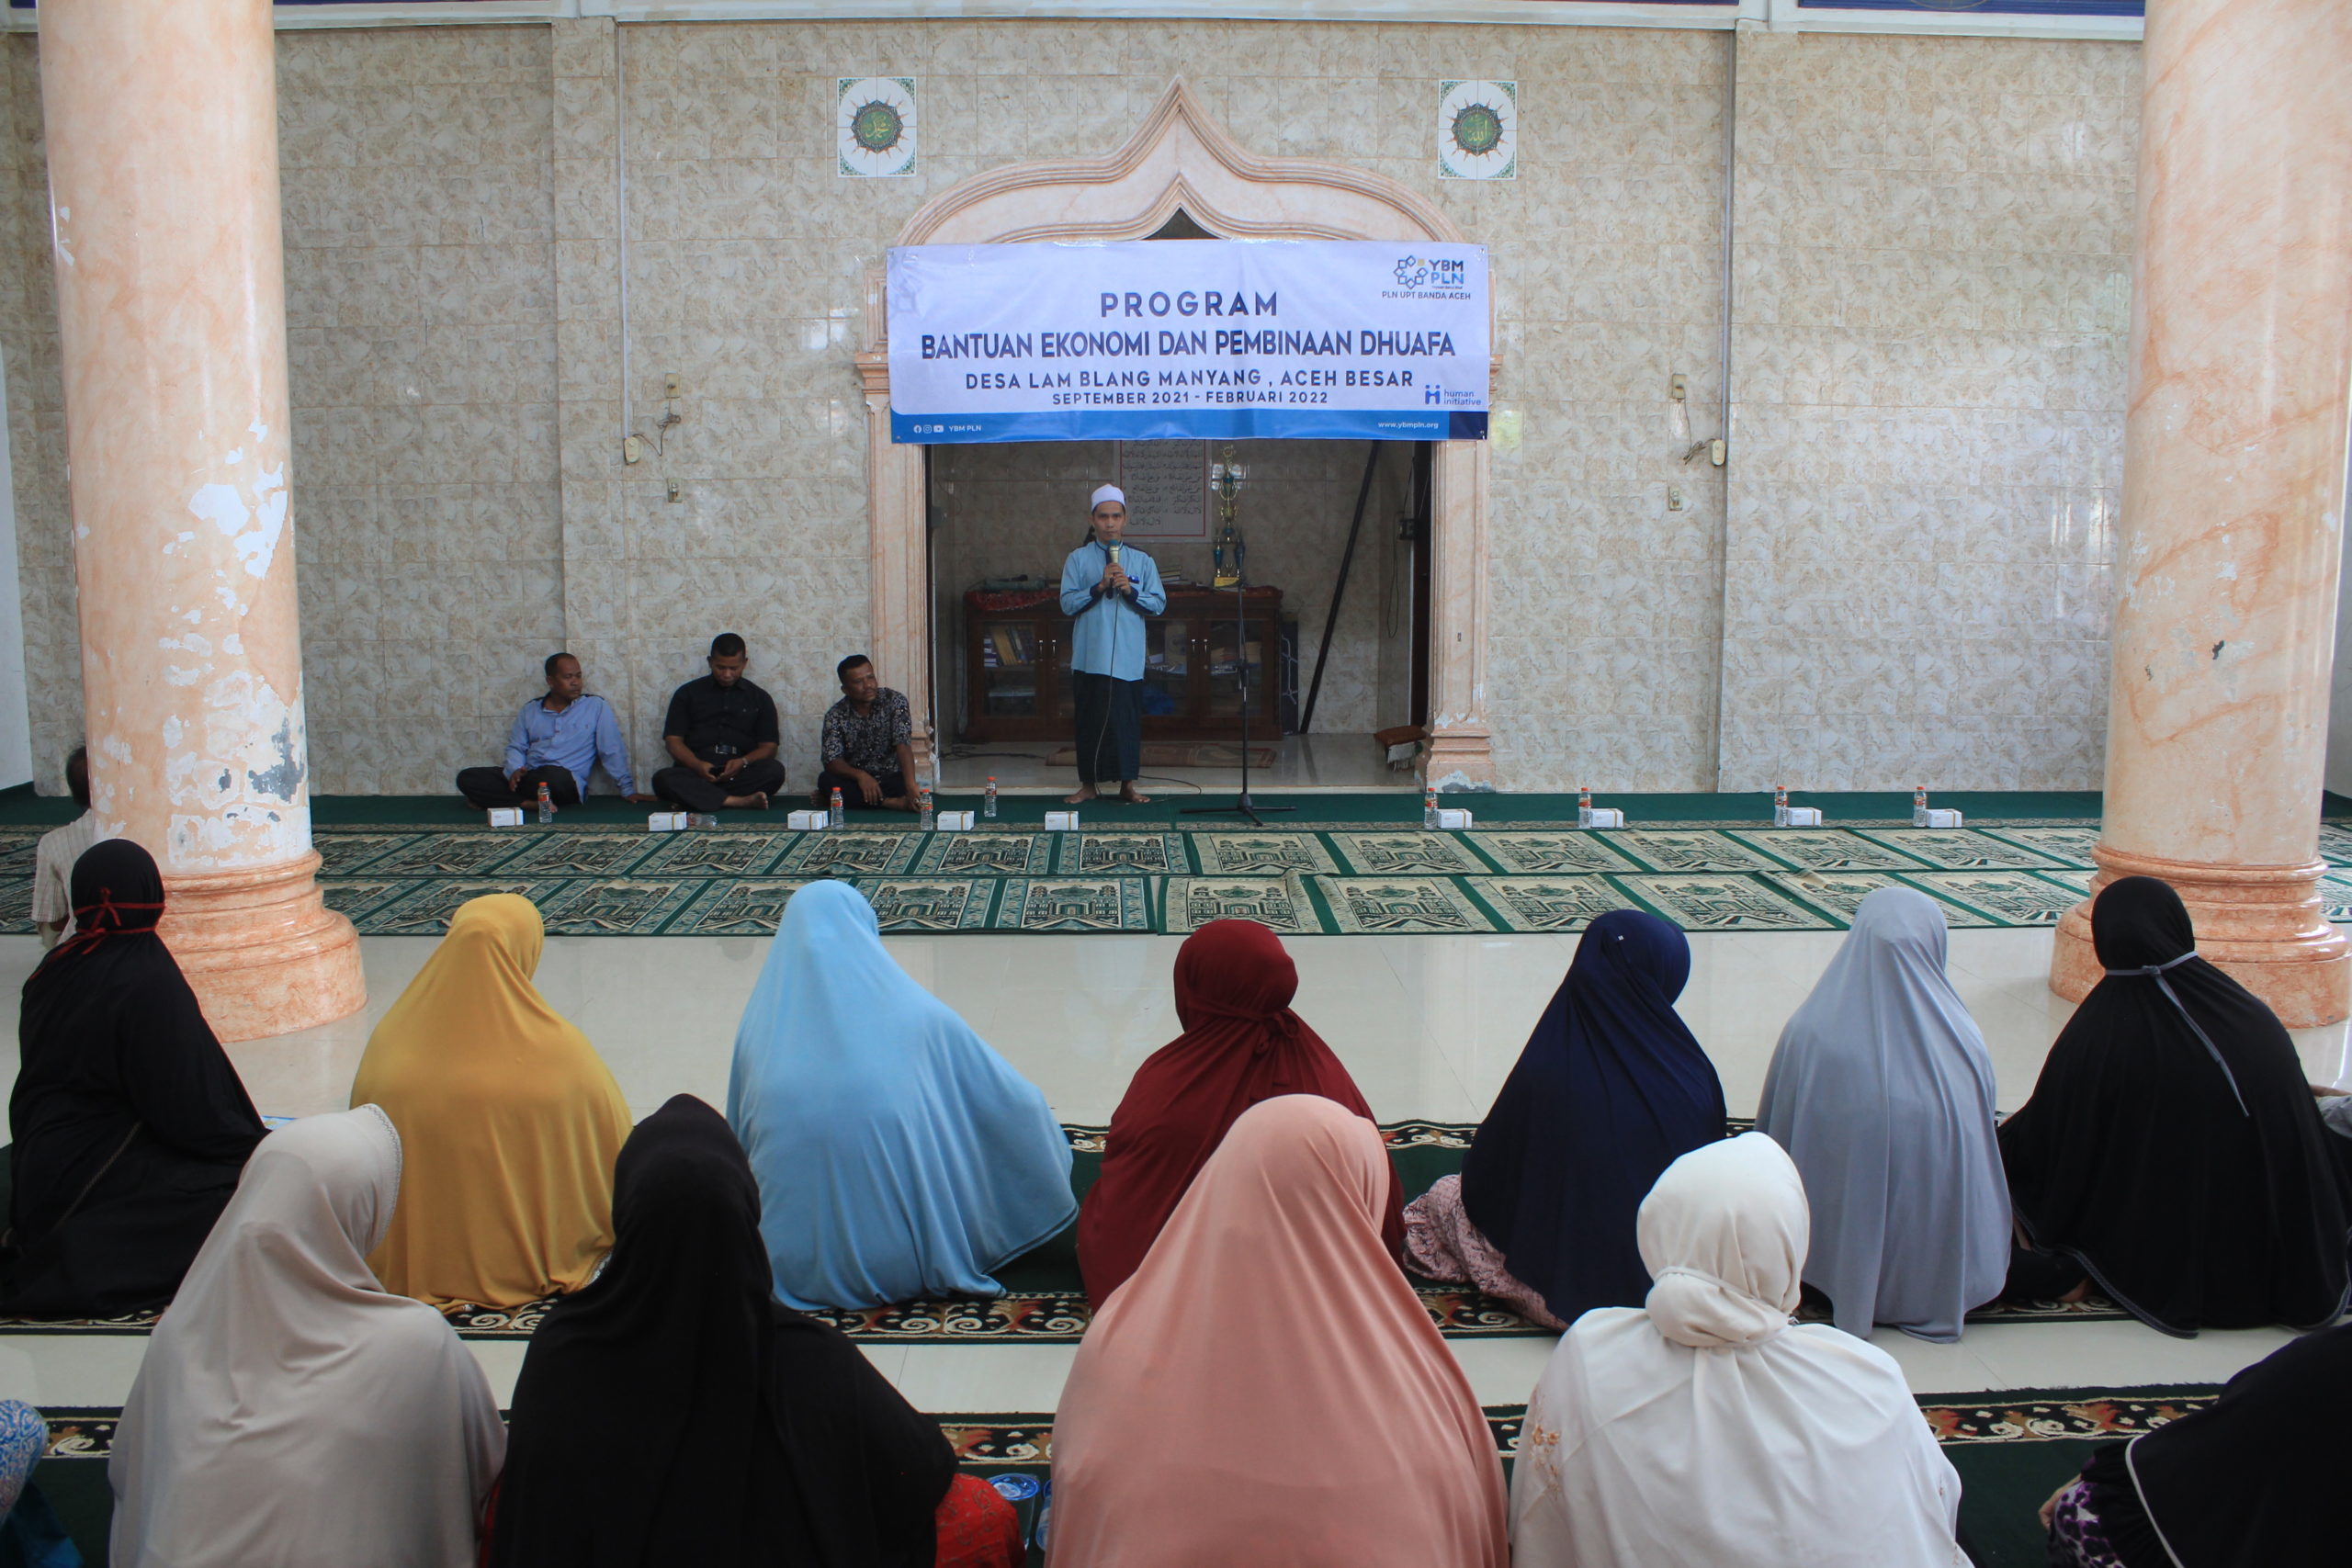 Pembinaan Duafa dan Program Bantuan Ekonomi oleh YBM PLN UPT Banda Aceh bersama HI Aceh